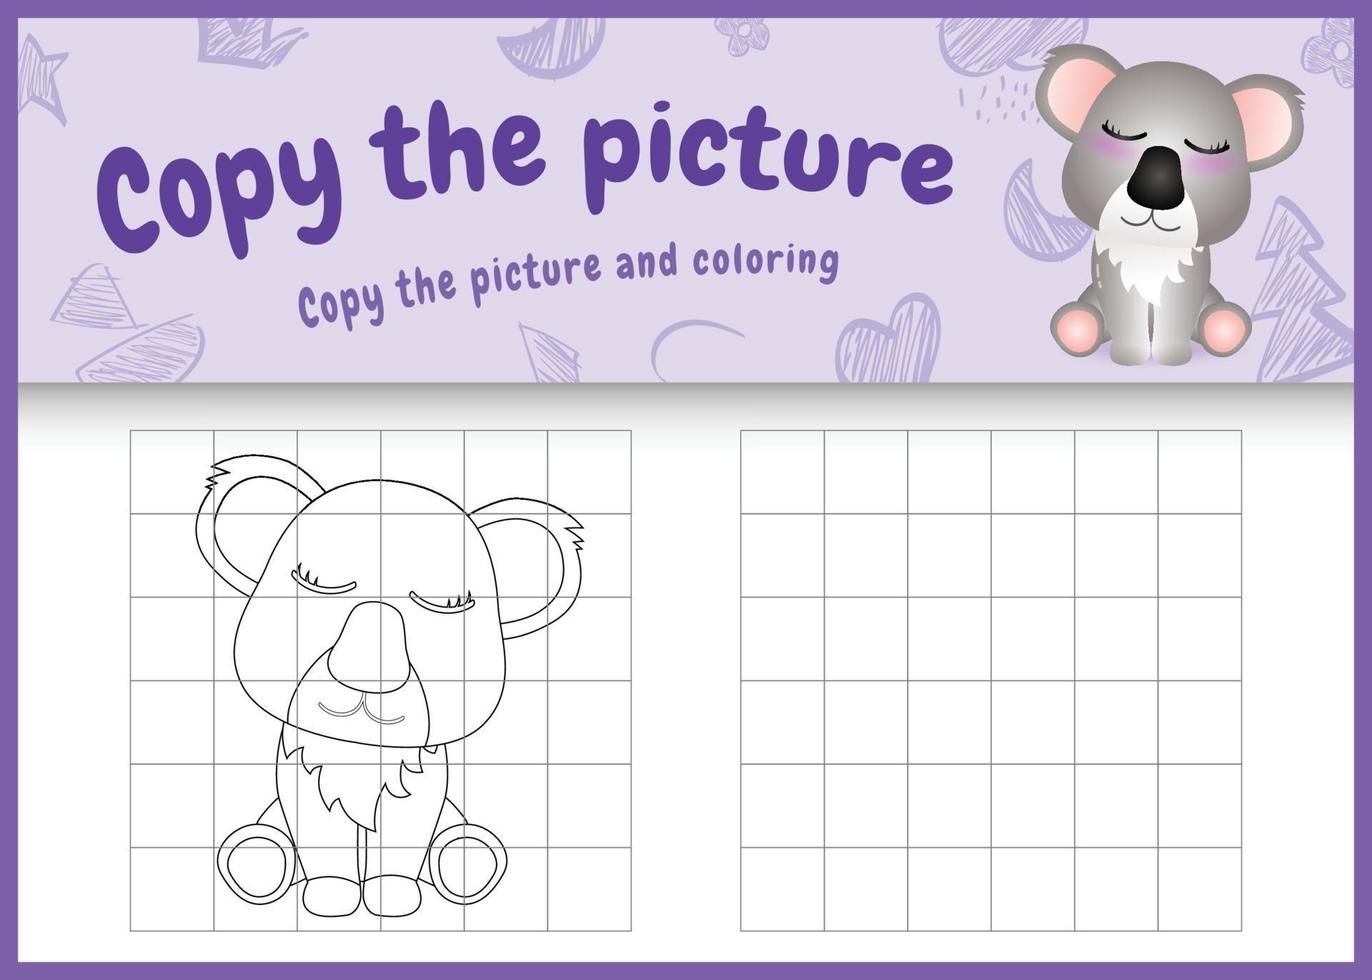 Copiez l'image jeu d'enfants et coloriage avec une illustration de personnage koala mignon vecteur